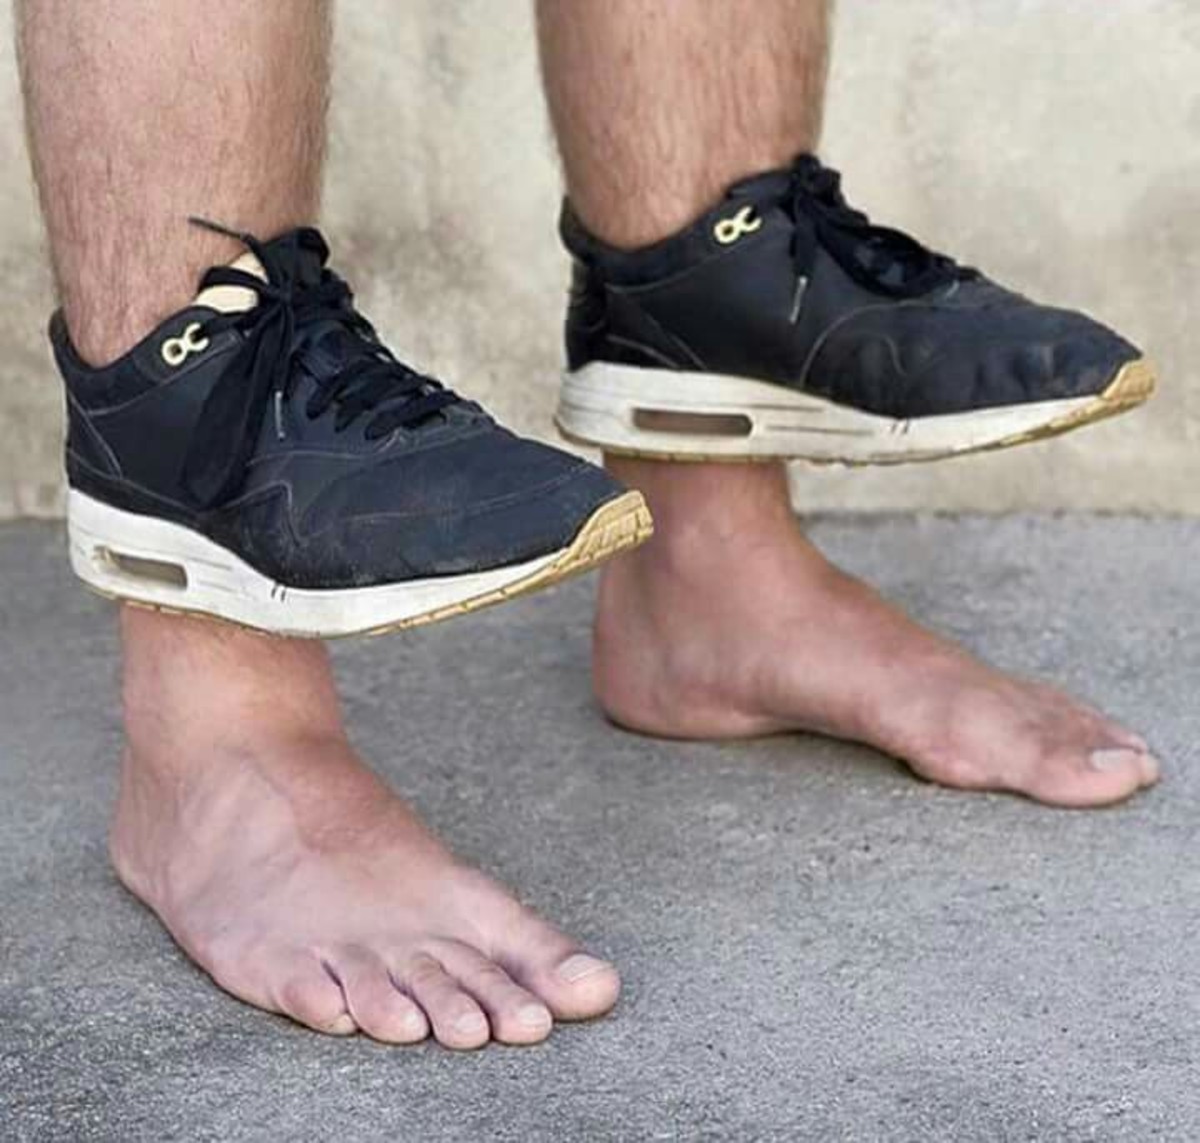 фото кроссовок мужских на ногах